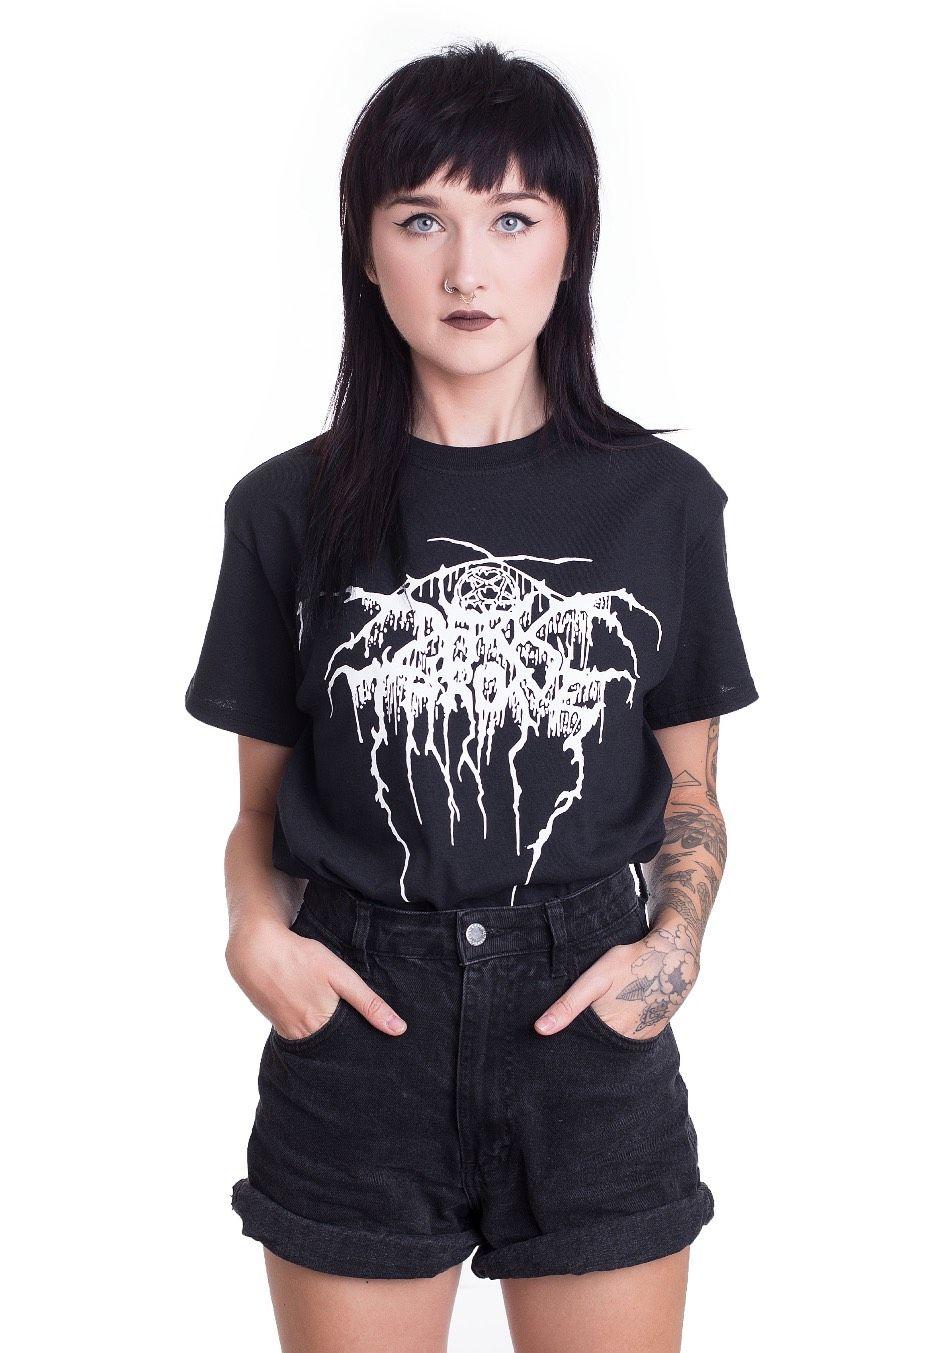 Darkthrone Logo - Darkthrone Shirt Black Metal Merchandise Shop